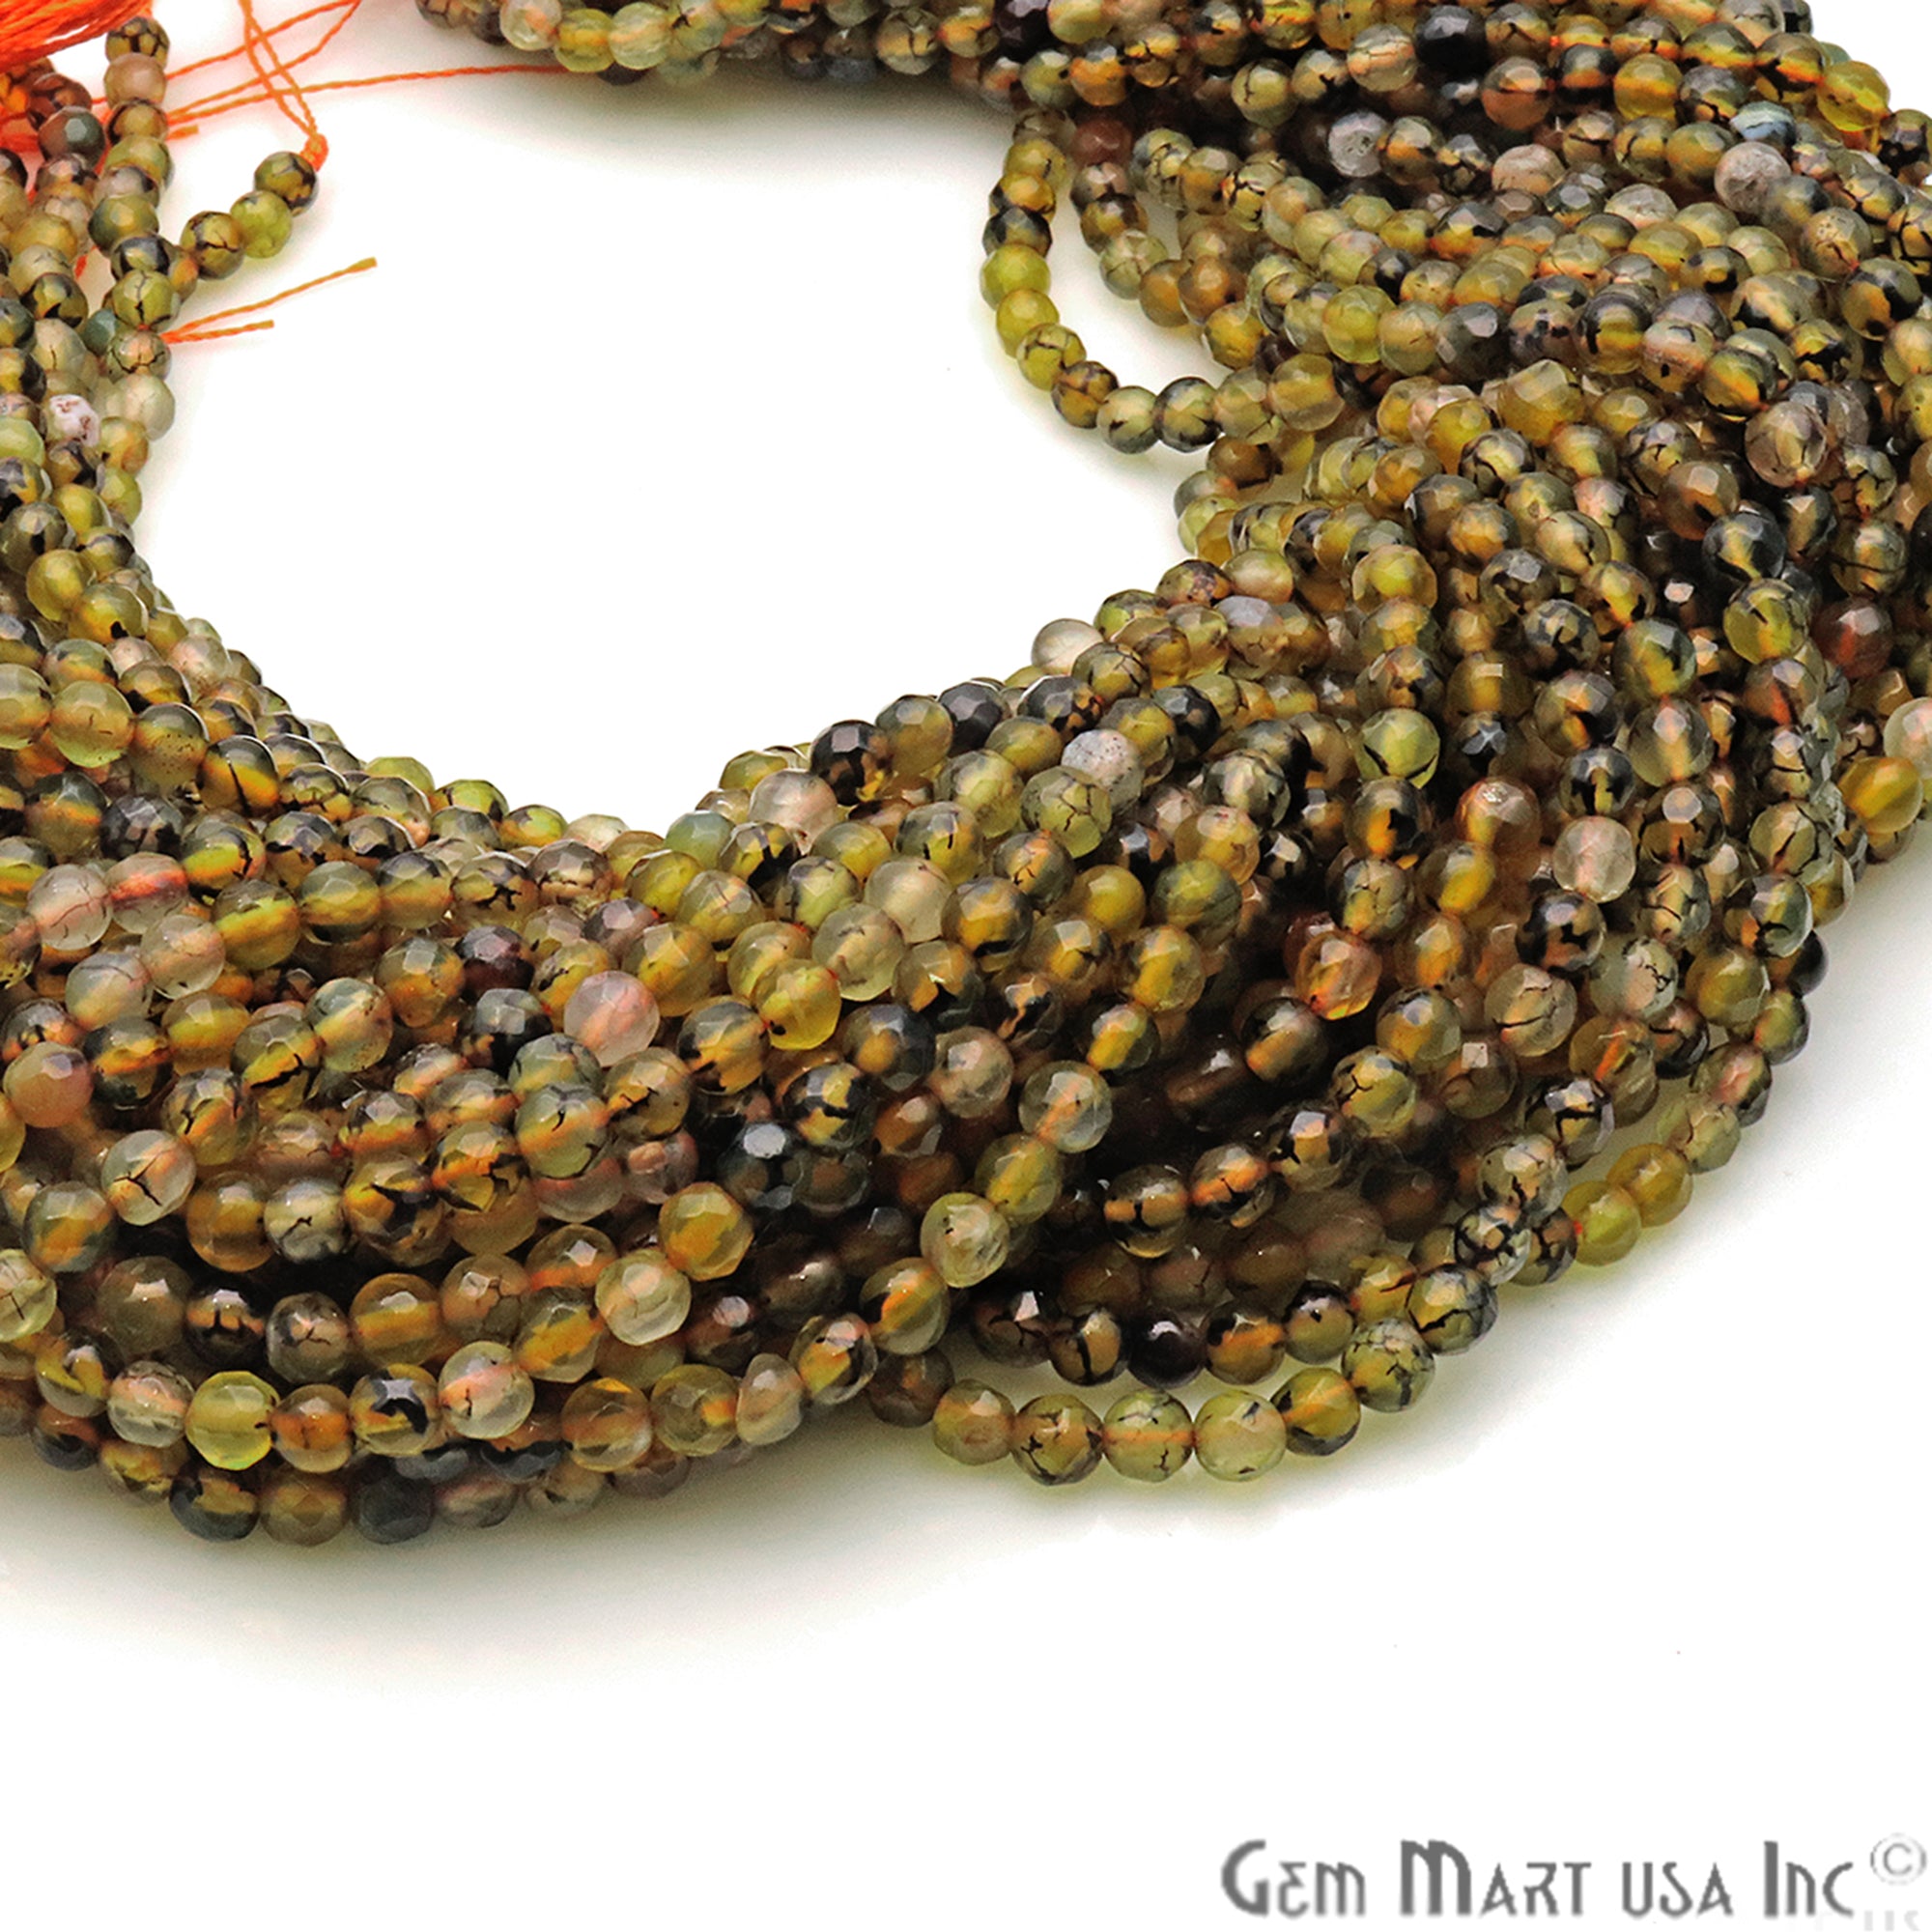 Bio Lemon Jade 4mm Faceted Rondelle Beads Strands 14Inch - GemMartUSA